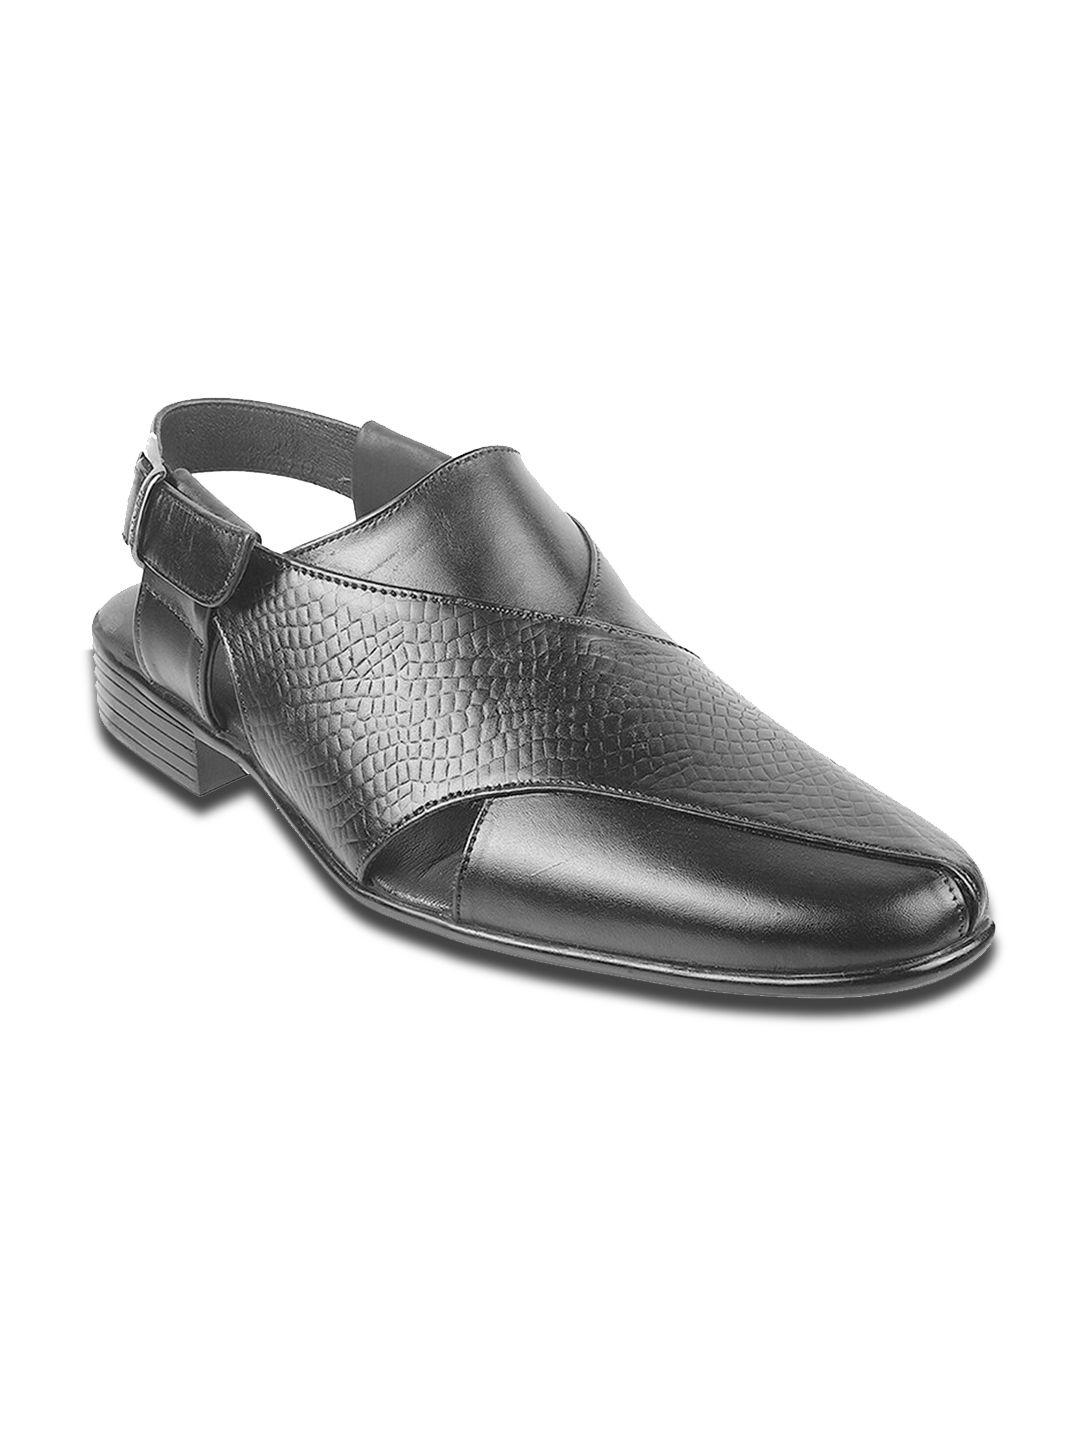 mochi men black leather shoe-style sandals